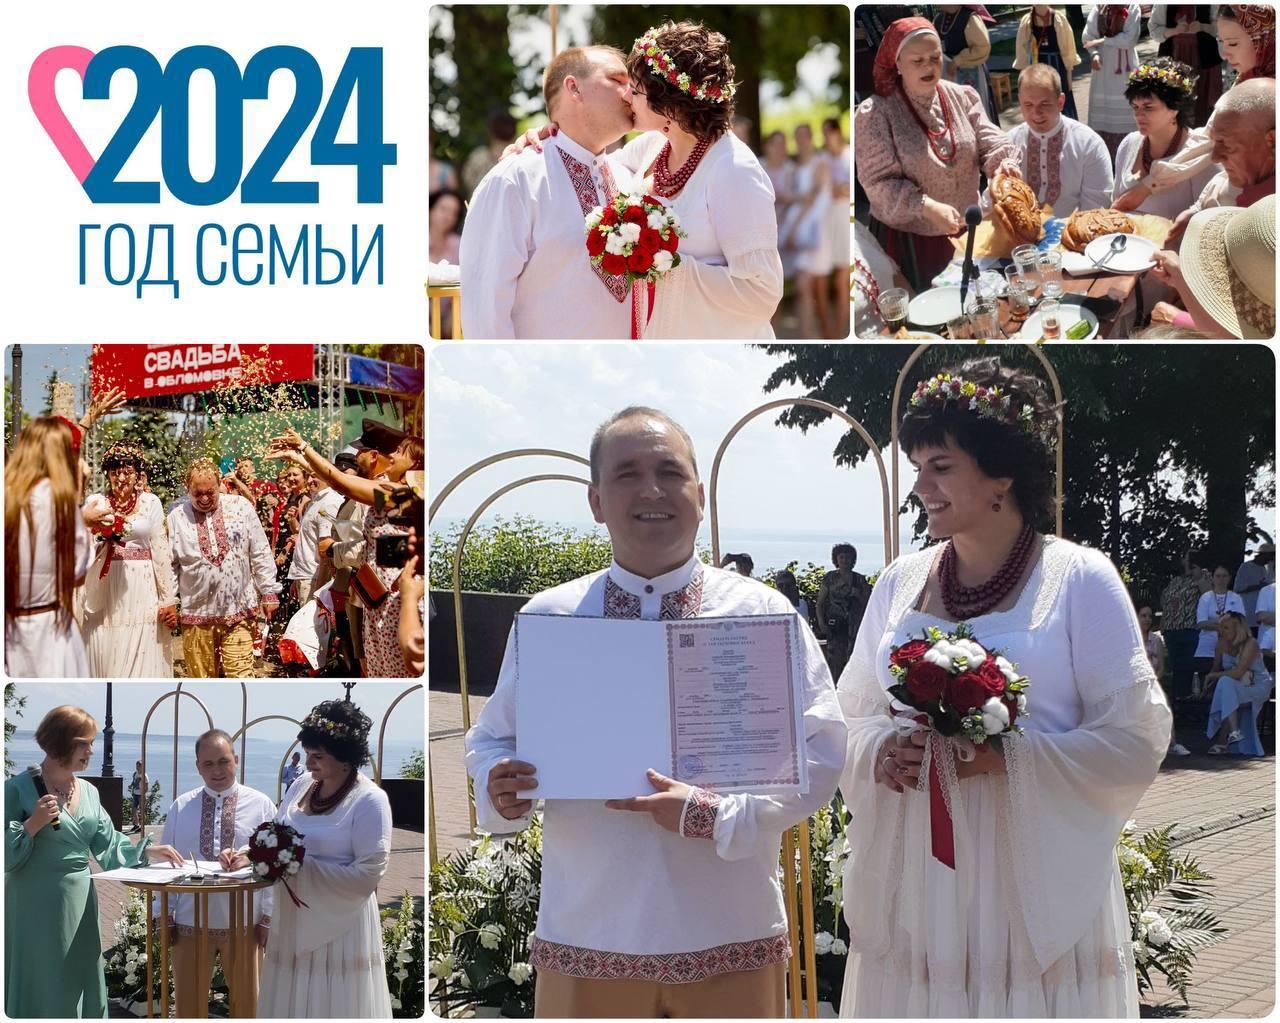 Пара из Барышского района приняла участие в фестивале Свадьба в Обломовке.